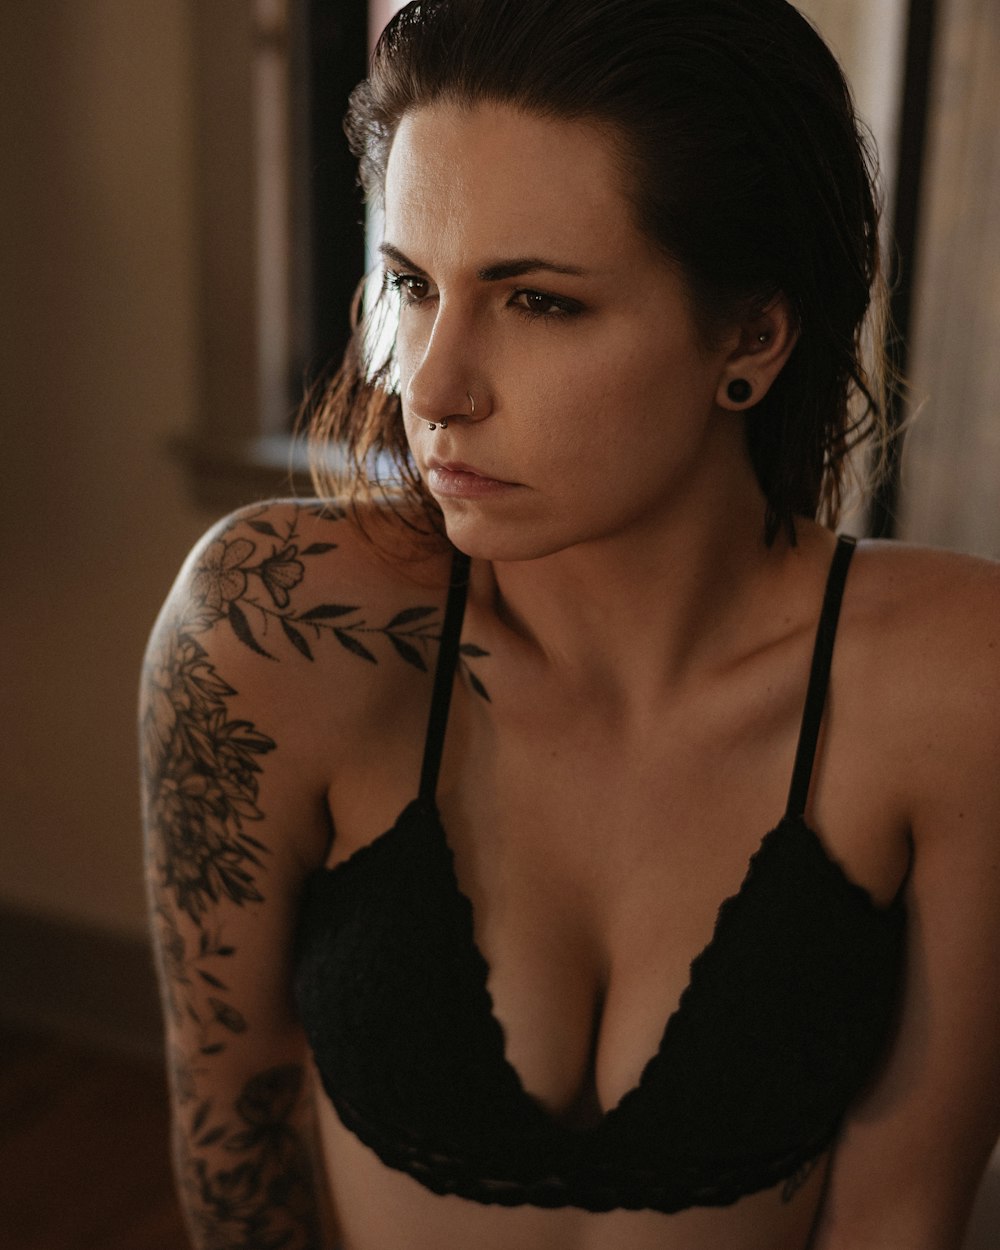 mulher no sutiã preto com tatuagem floral preta em suas costas